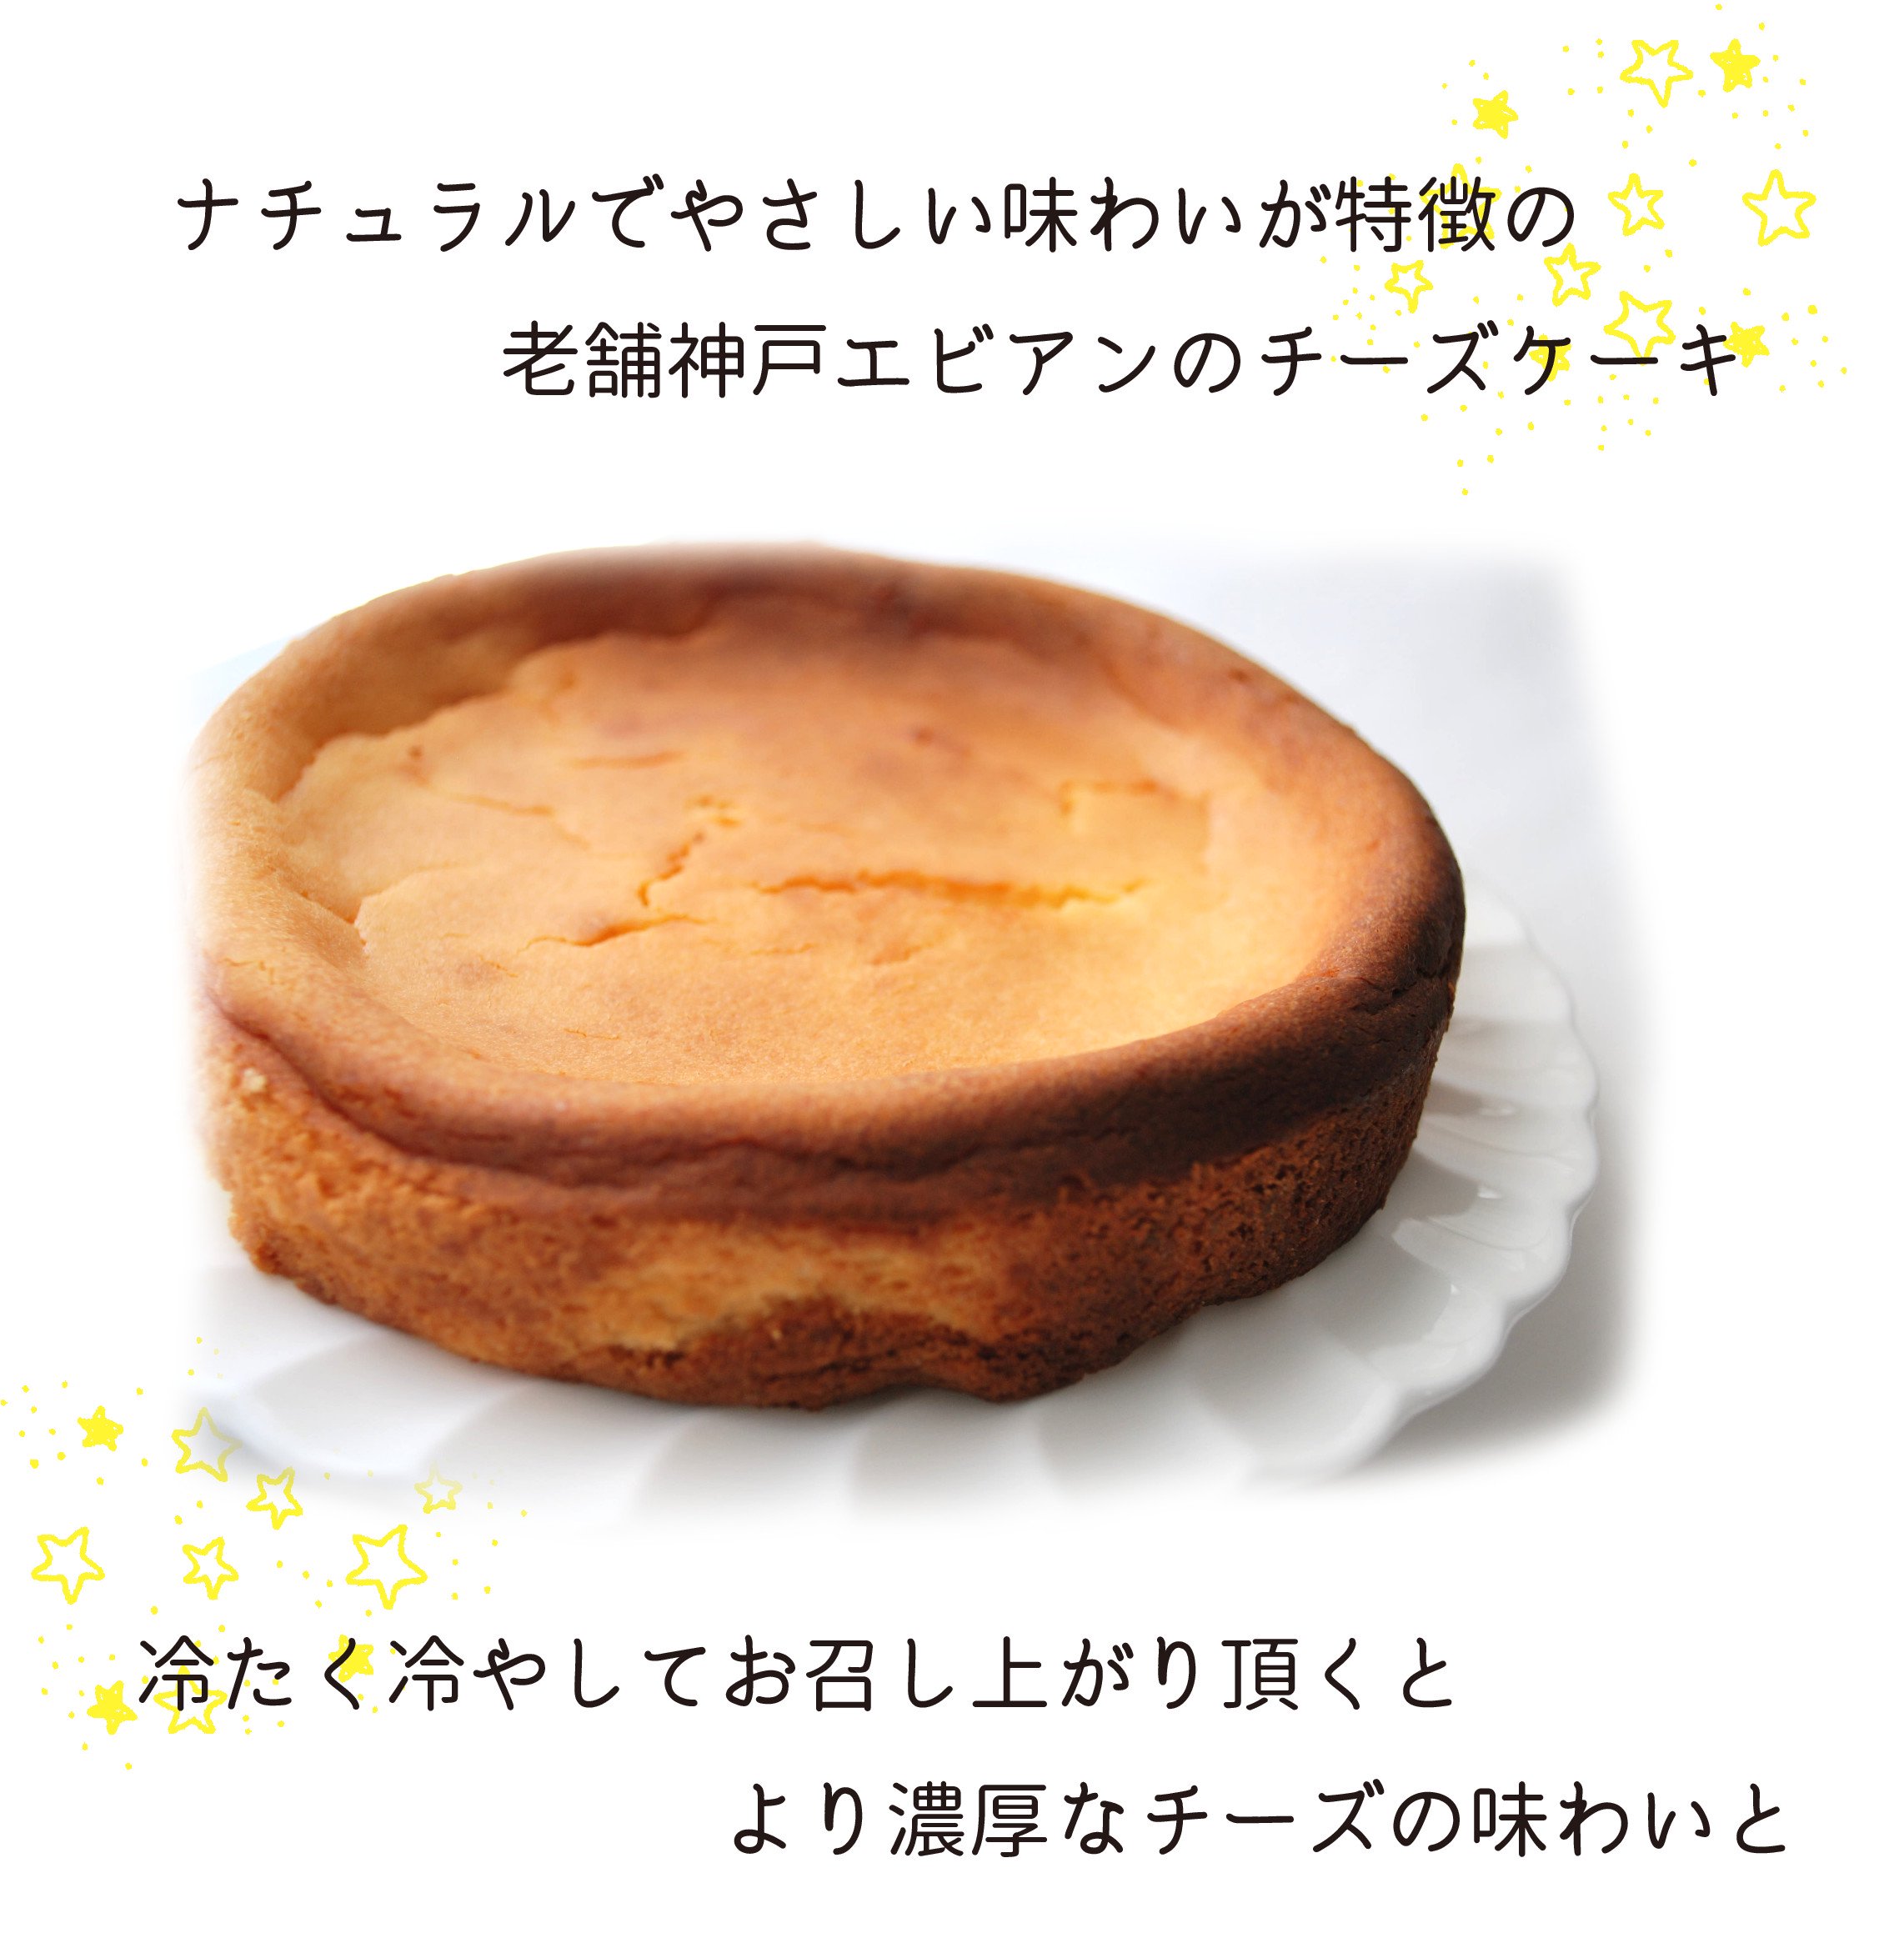 神戸エビアンコーヒー チーズケーキ 現在リニューアル中のため販売を停止しております今しばらくお待ちください Kobe Evian Coffee Online Shop